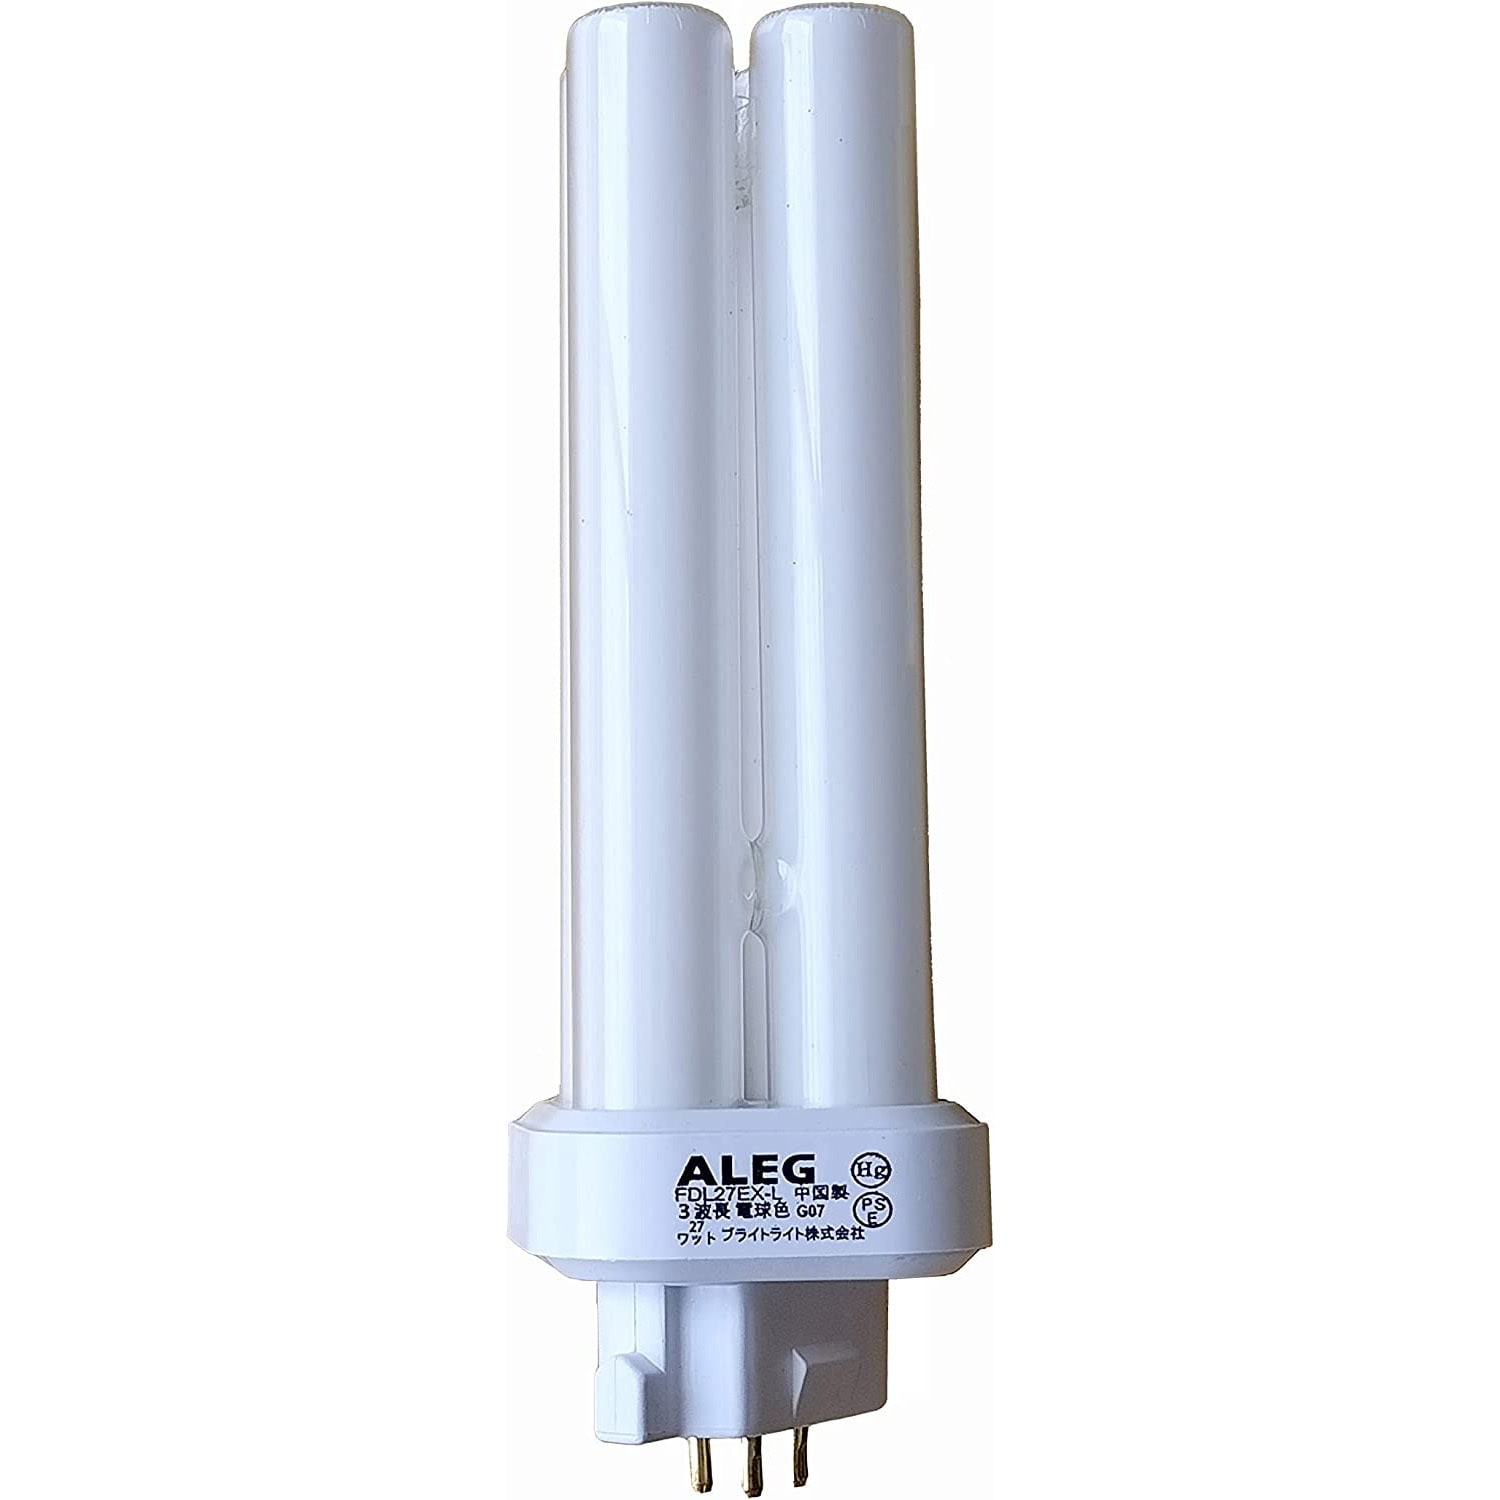 ベストセラー 日立コンパクト形蛍光ランプ13W FML13EX-L 1c/s10個入 